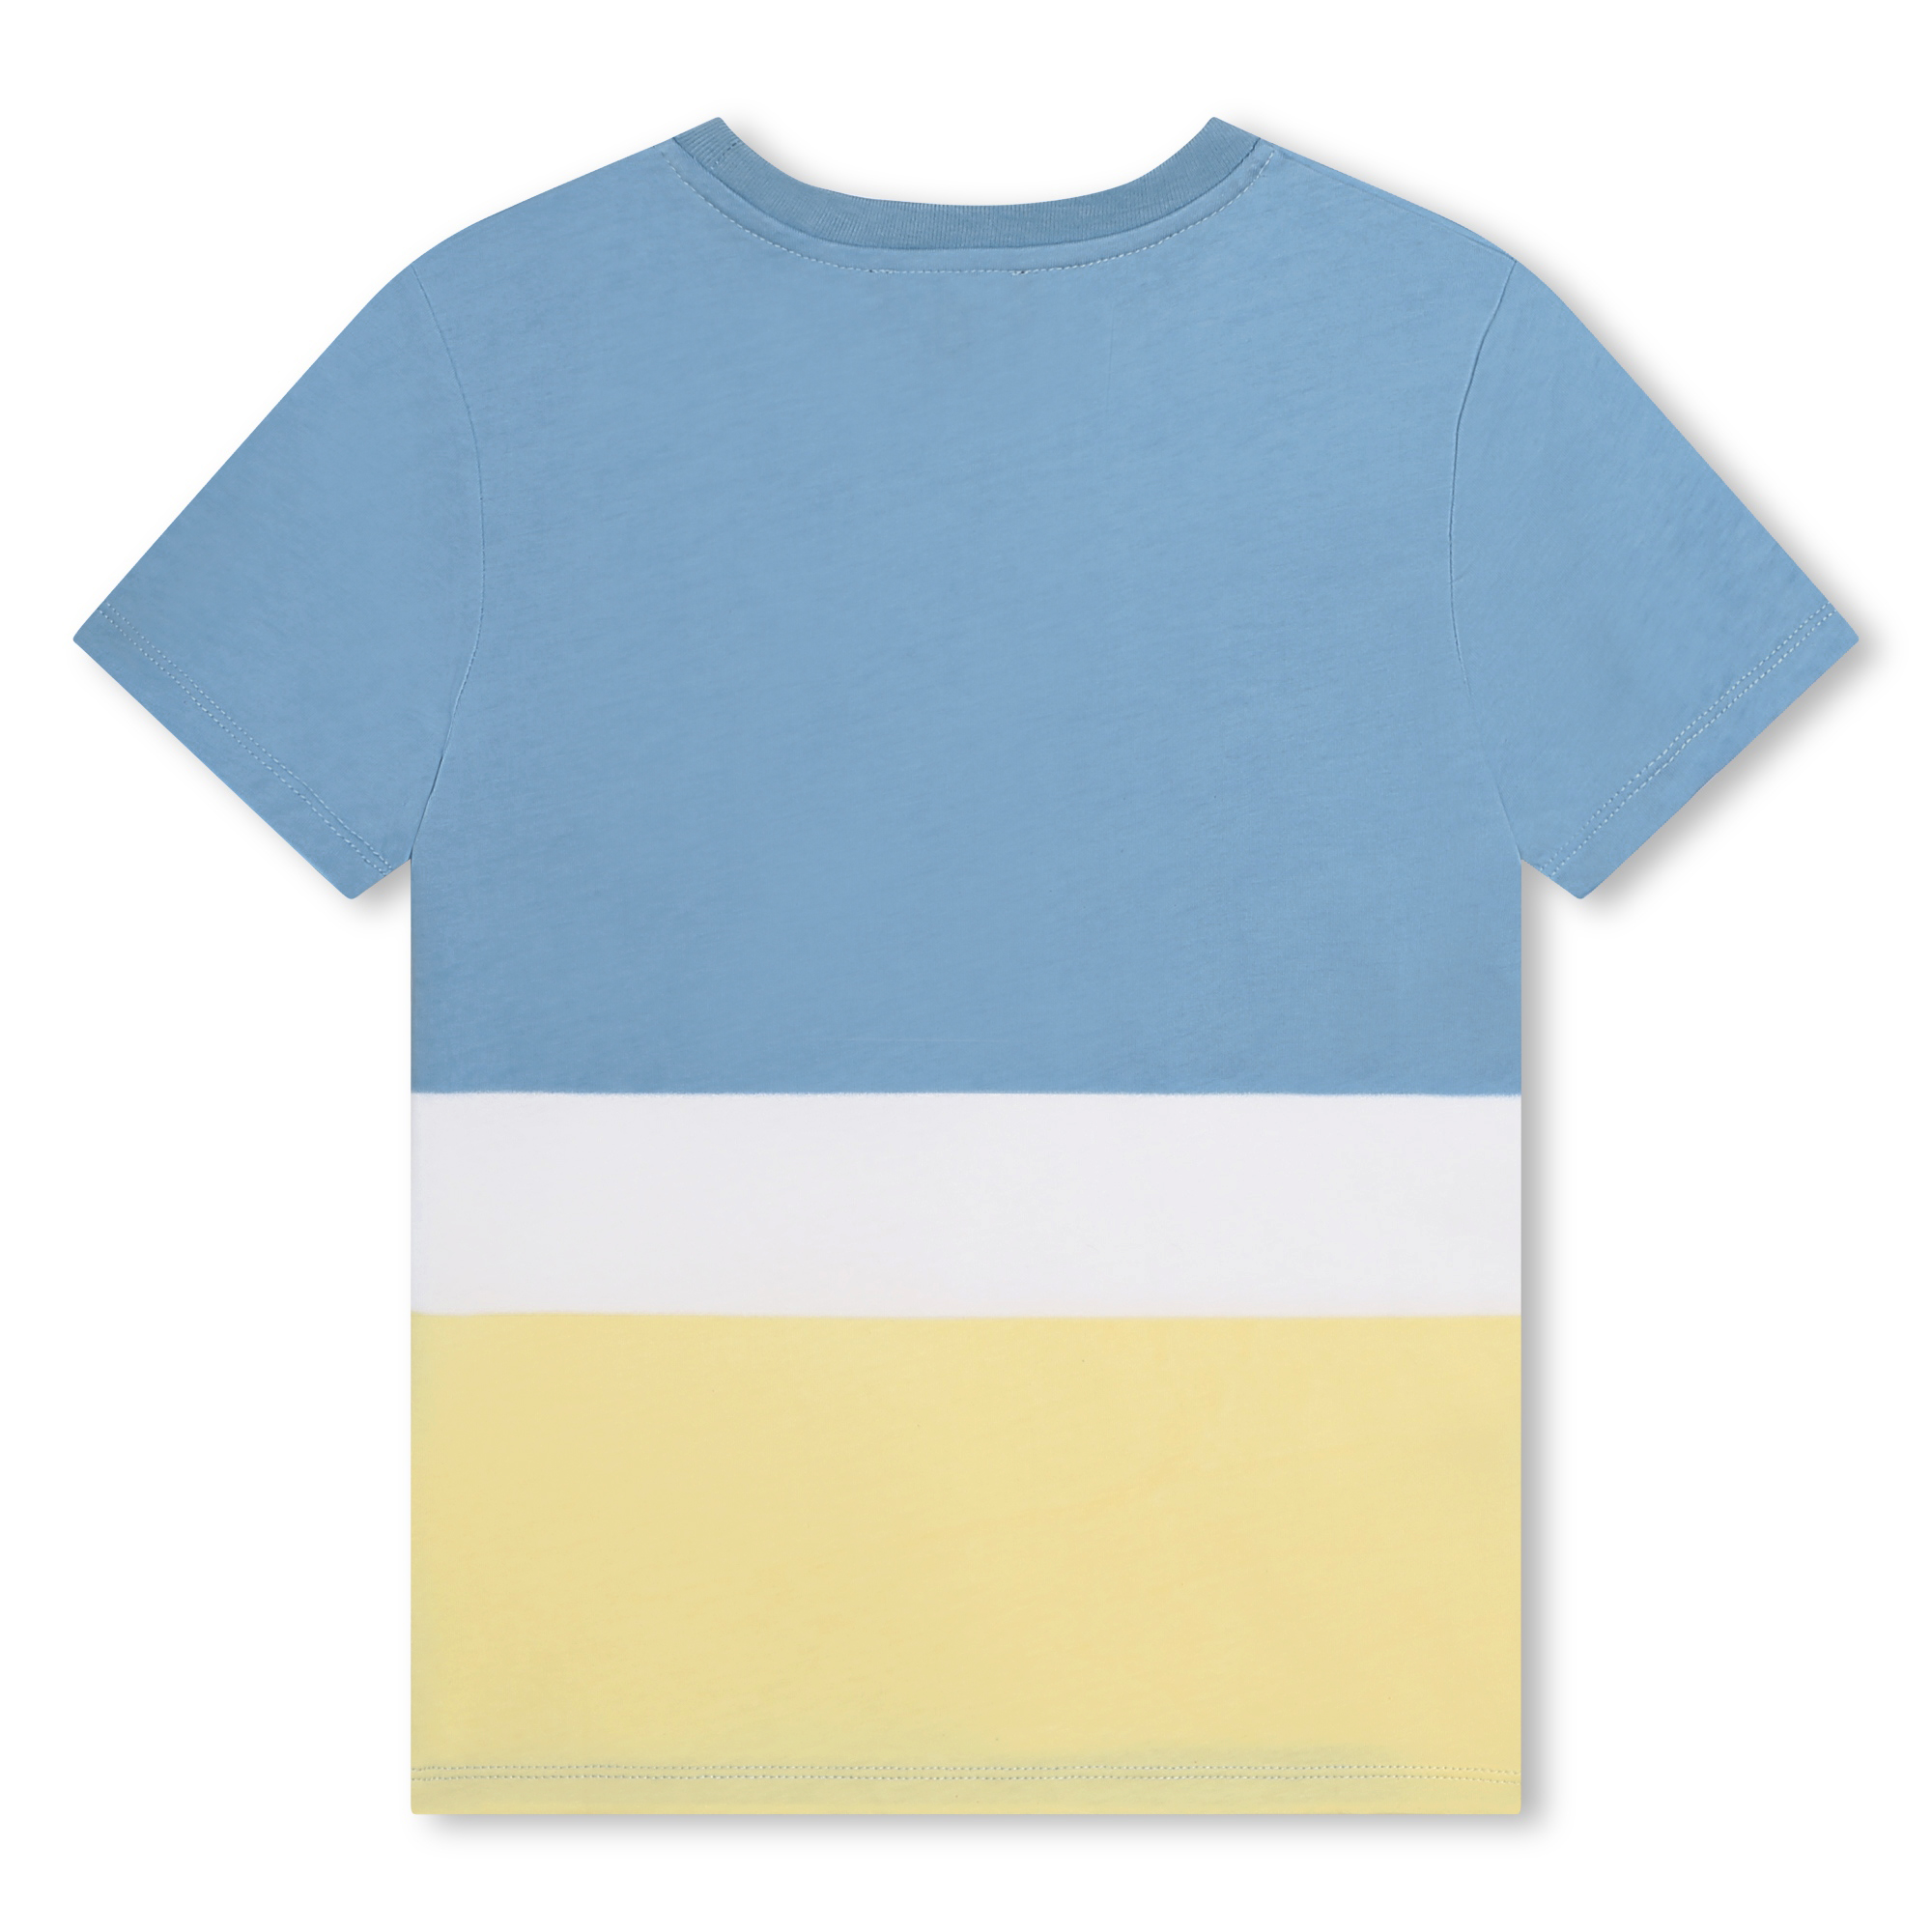 Camiseta multicolor de algodón DKNY para NIÑO